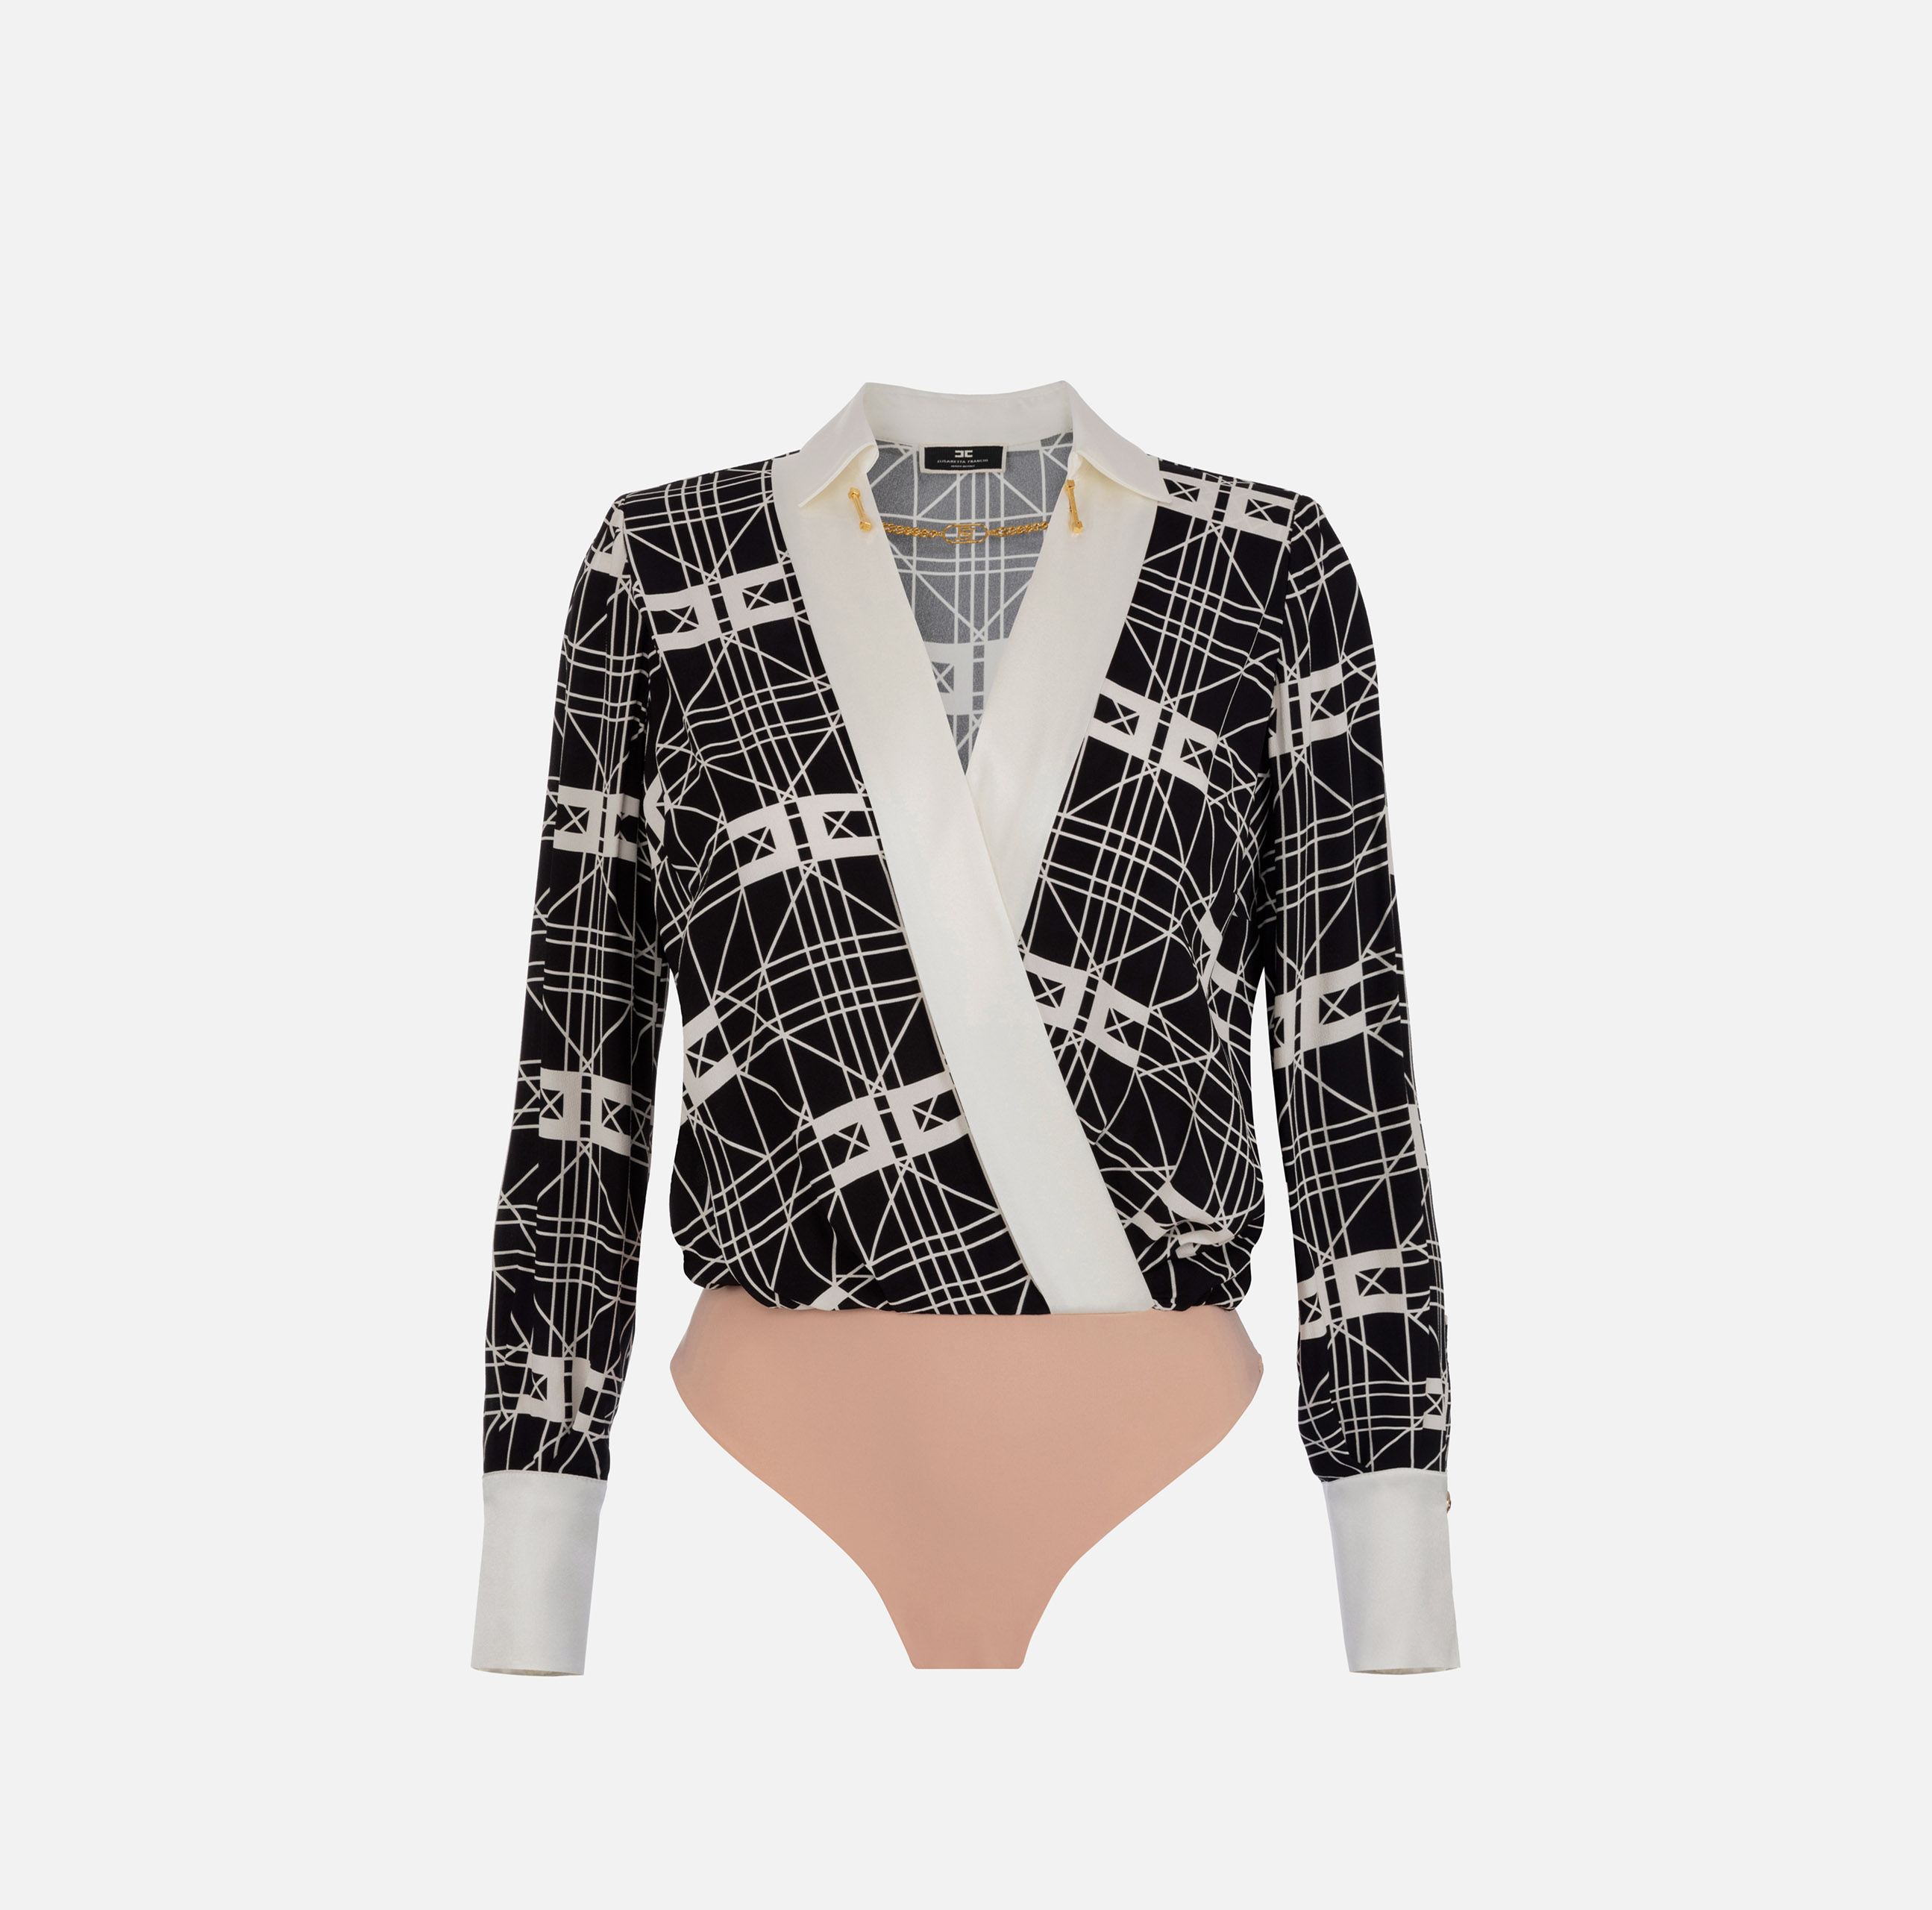 Crossover bodysuit-style blouse in printed viscose georgette fabric - ABBIGLIAMENTO - Elisabetta Franchi